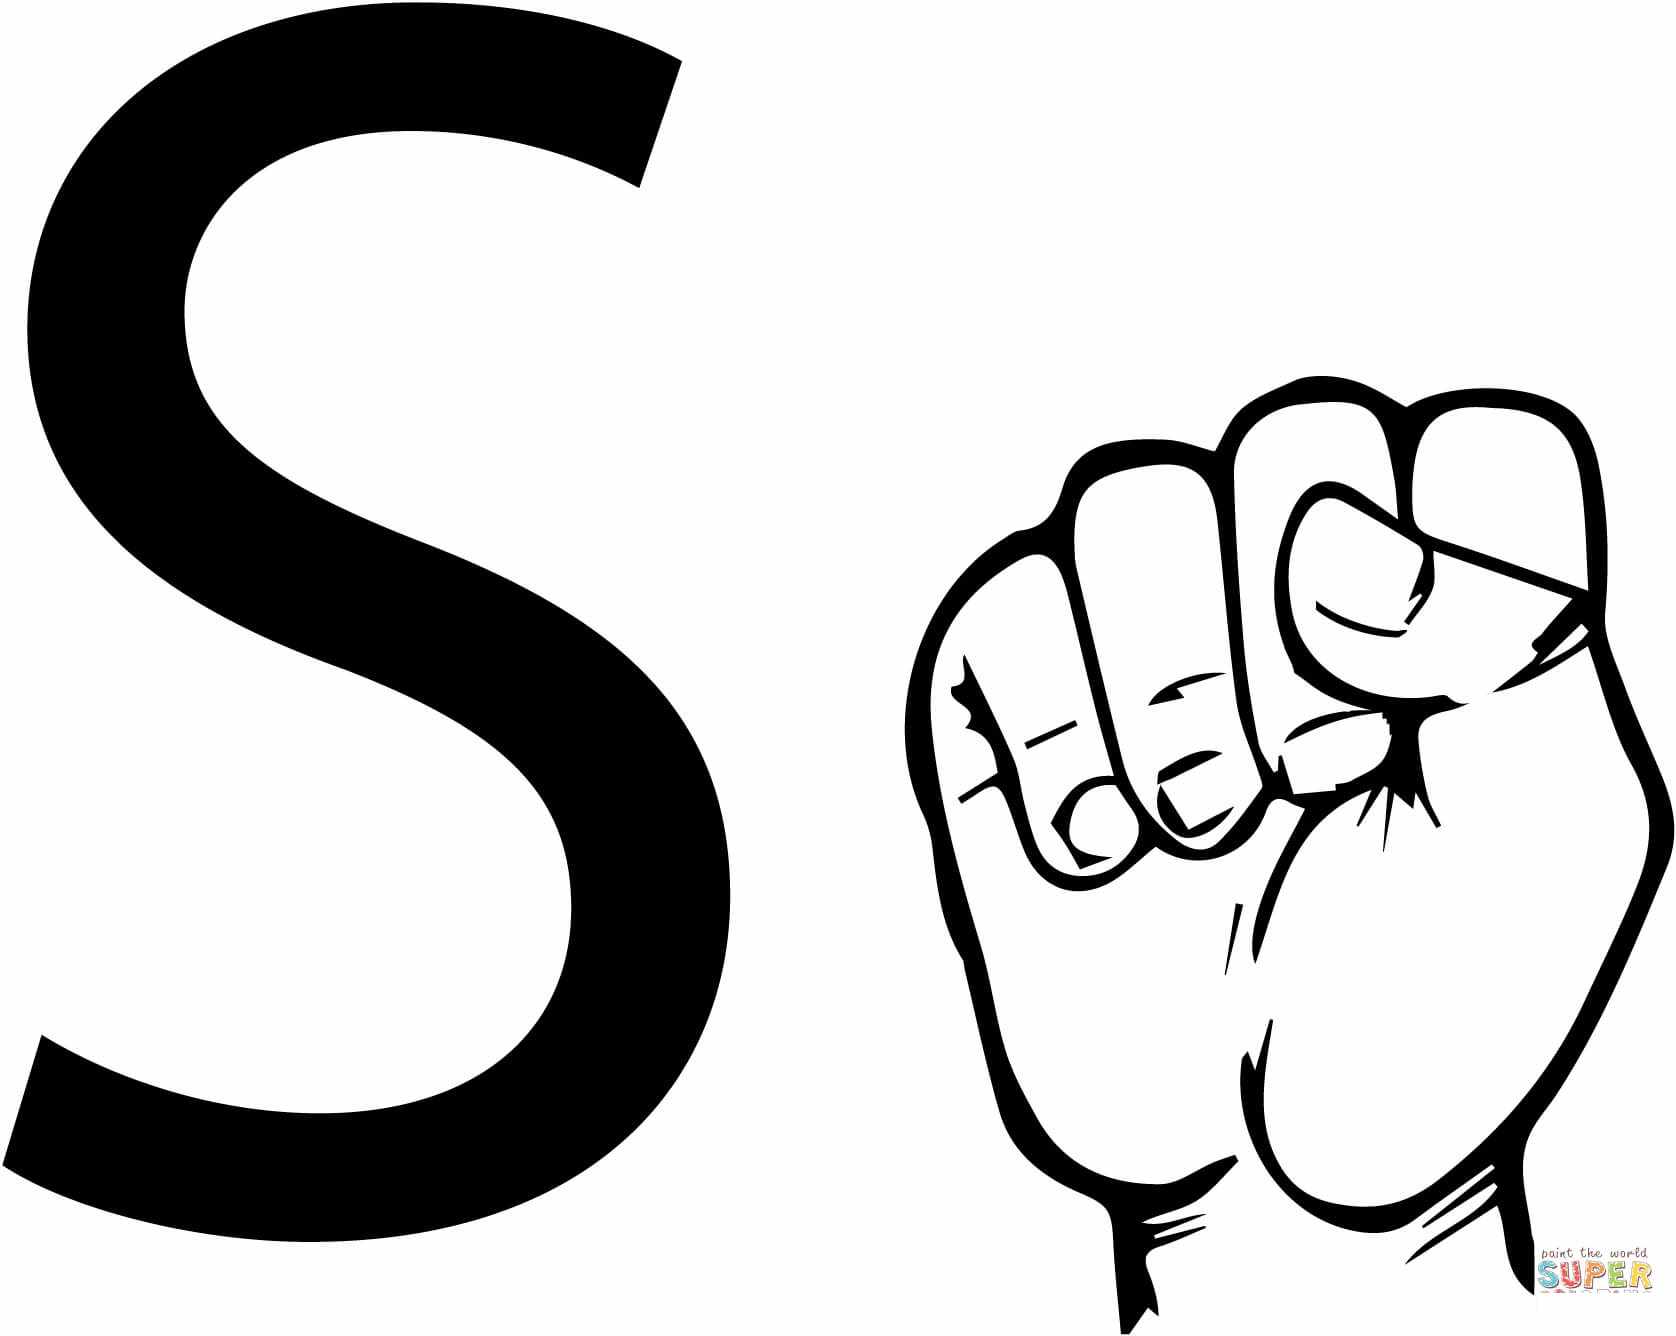 ASL viipekeeltäht S